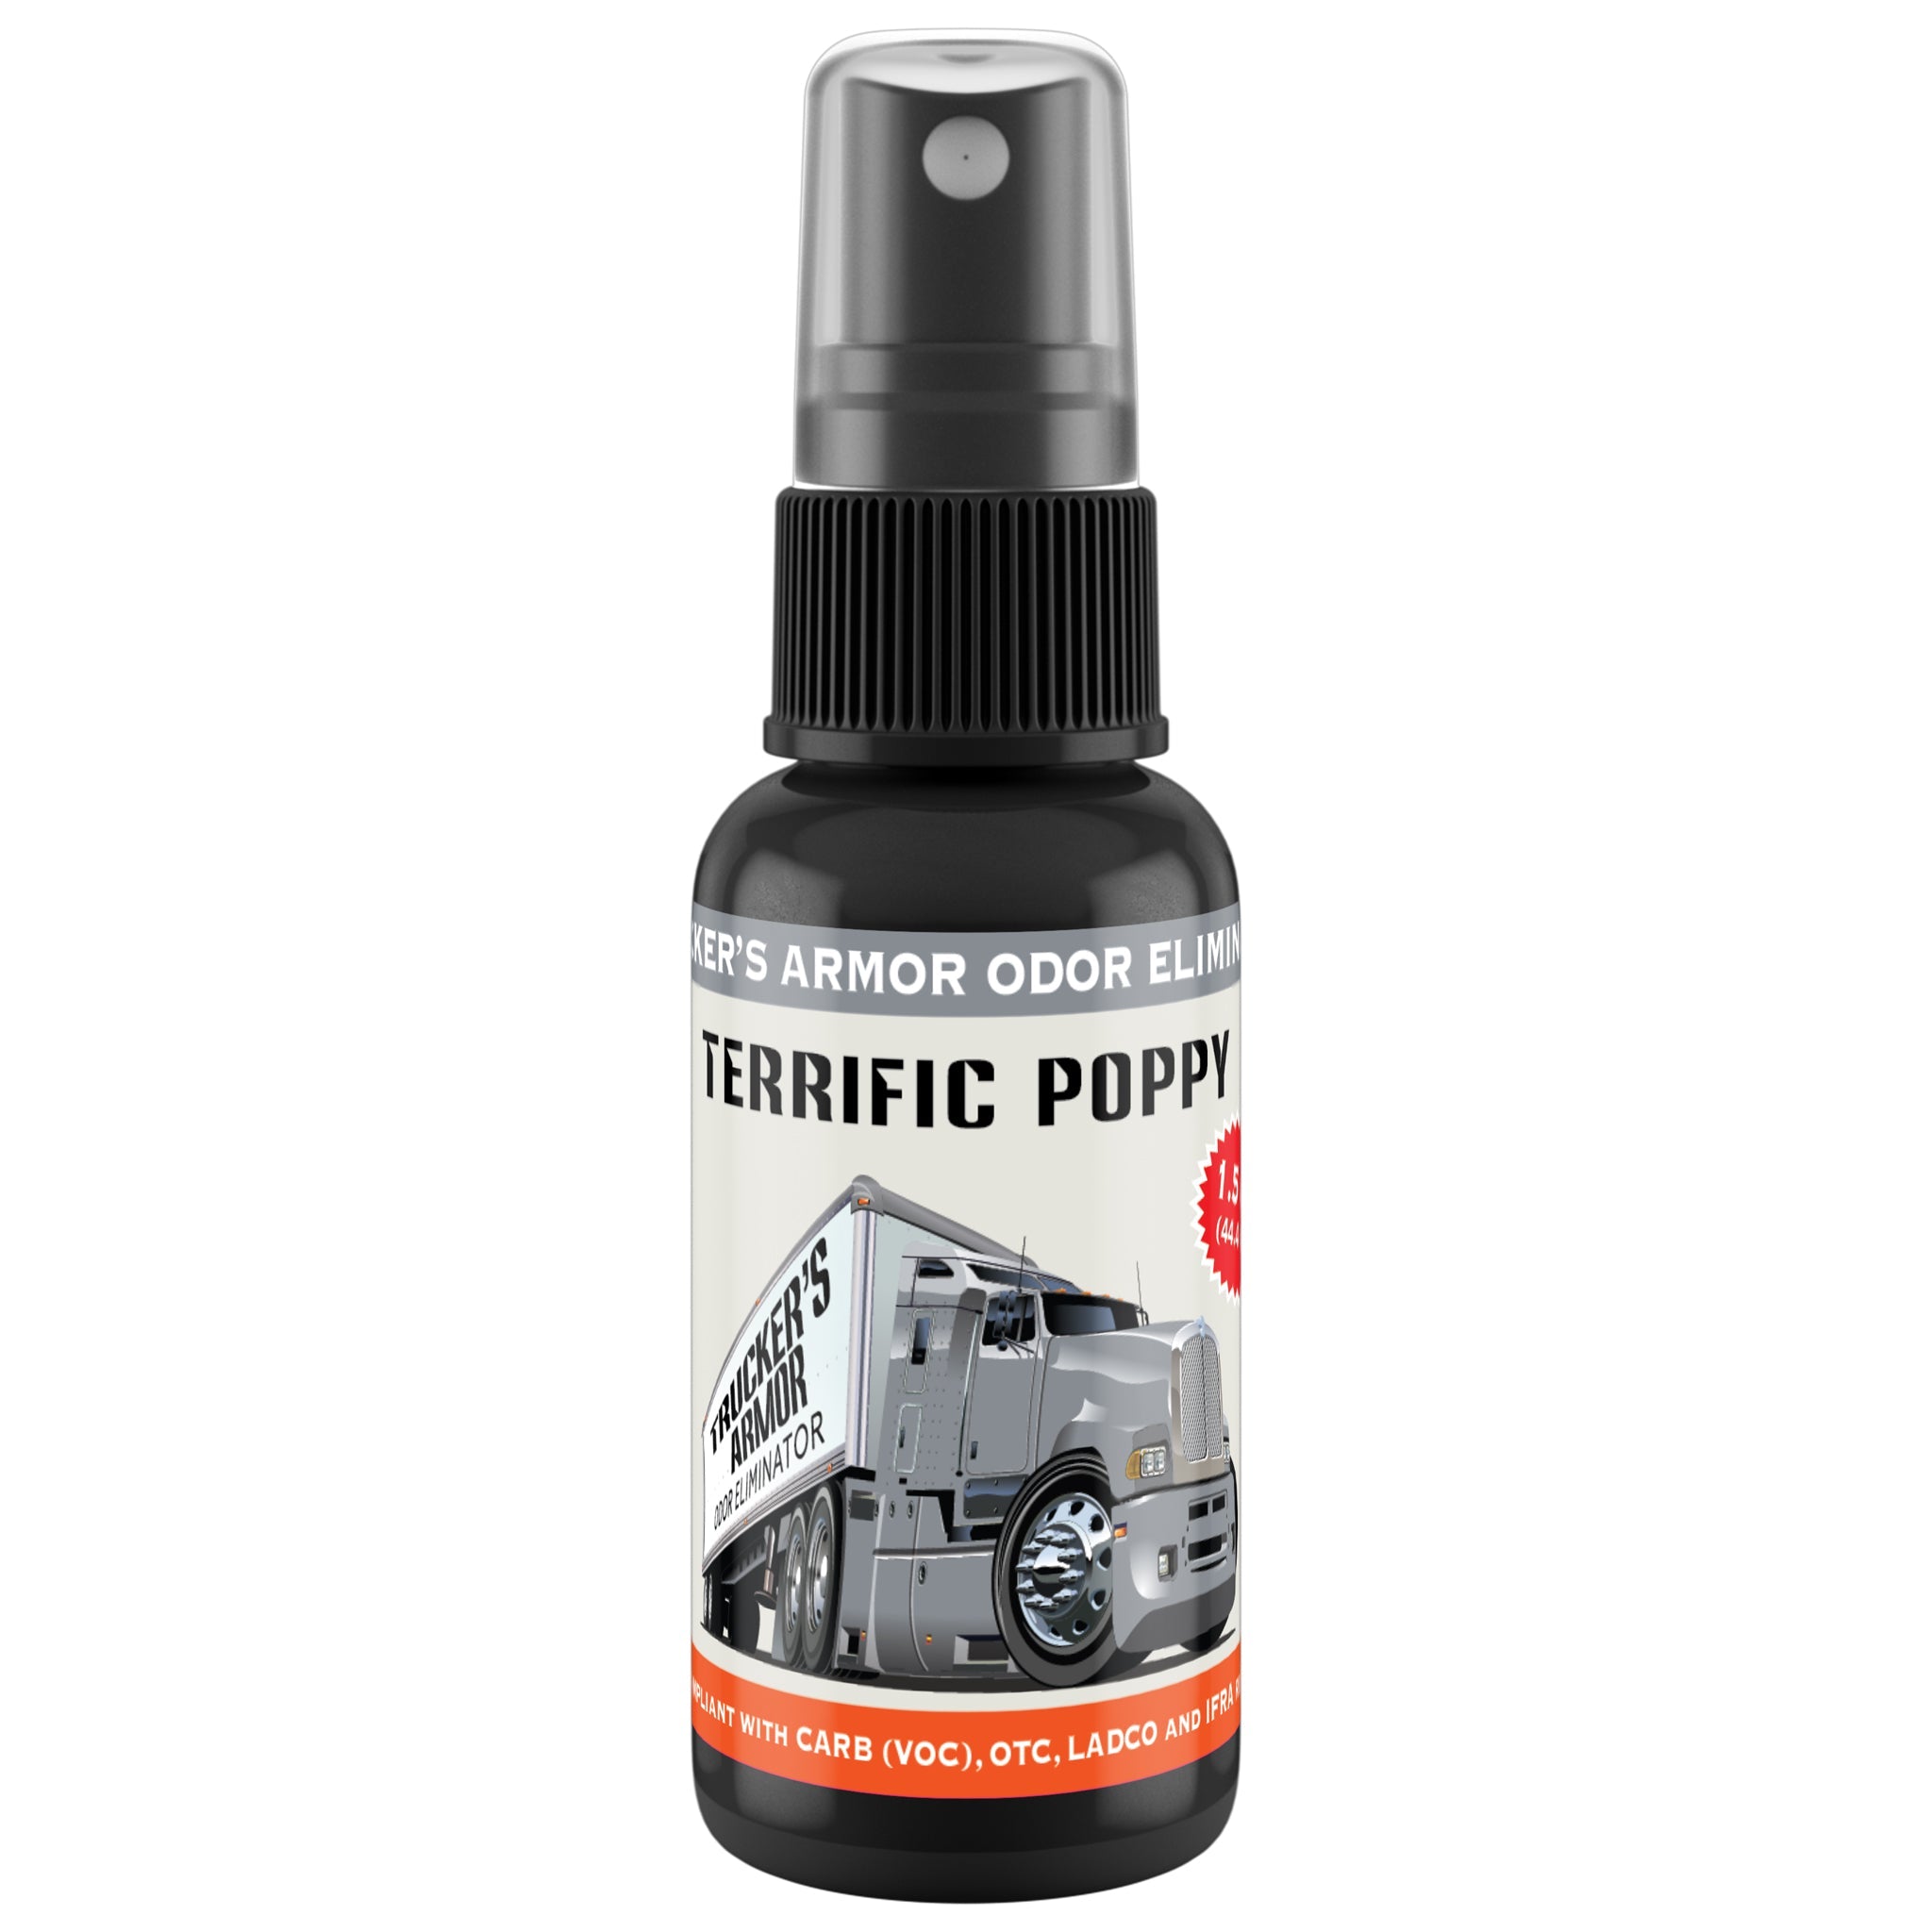 Trucker's Armor Odor Eliminator - Terrific Poppy Scent